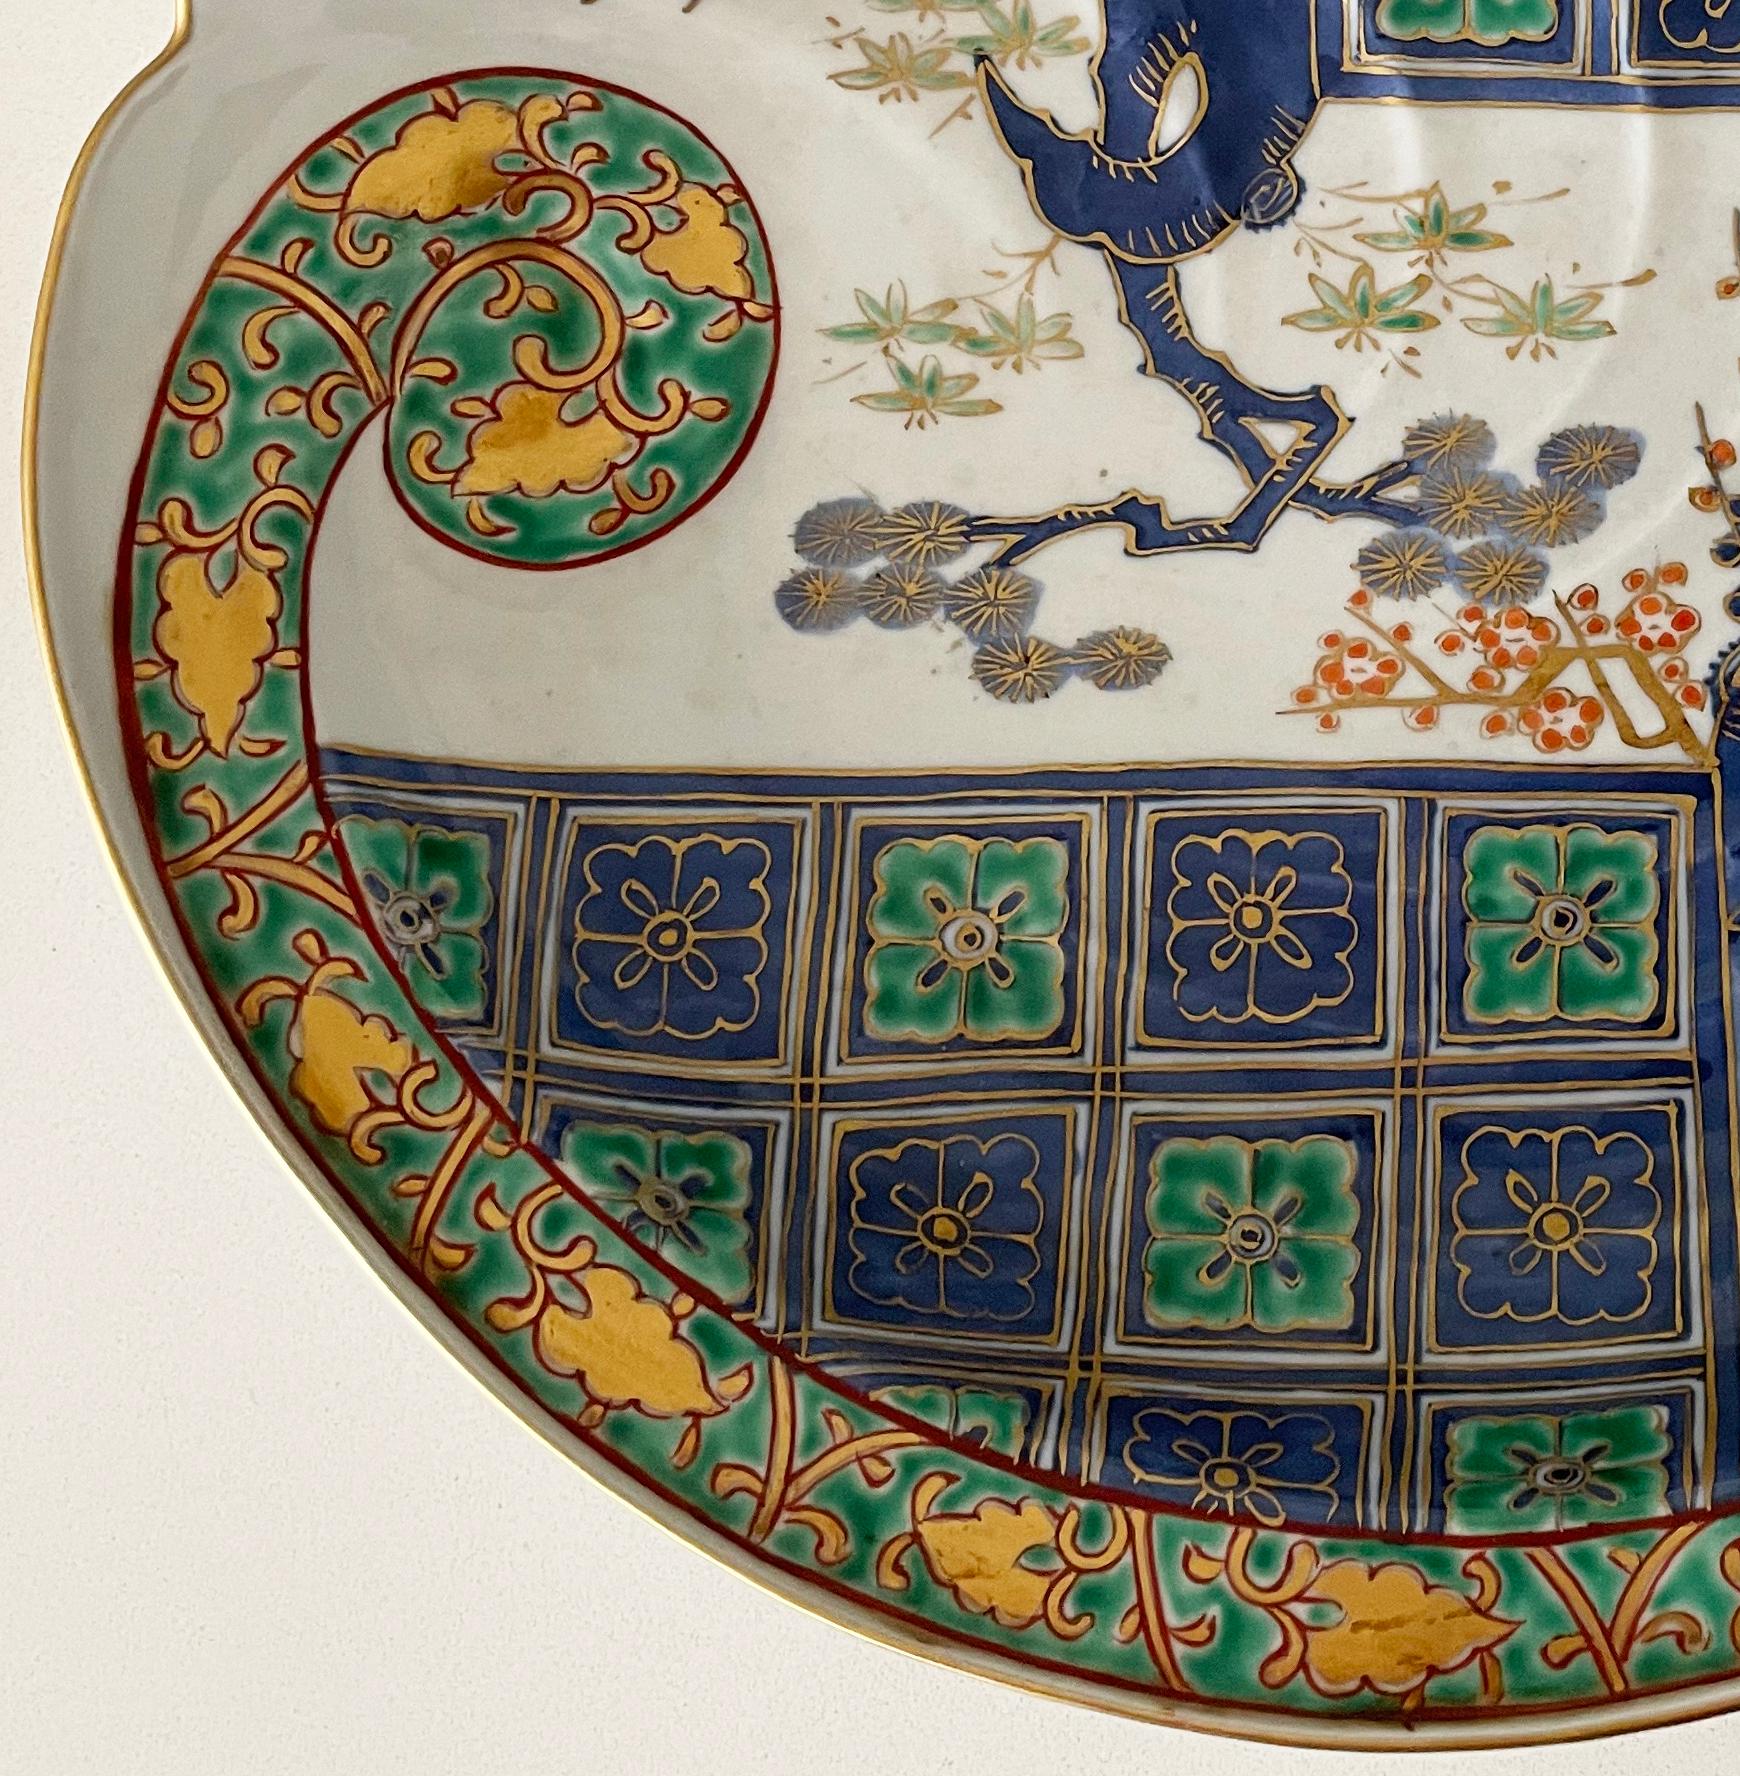 Eine schöne, handbemalte japanische Imari-Schale mit glasierter Oberfläche und geriffeltem Rand in der oberen Hälfte, reich verziert mit geometrischen Blumenmustern, einer geschwungenen Weinranke und Prunus in leuchtenden Blau-, Orange-, Grün- und